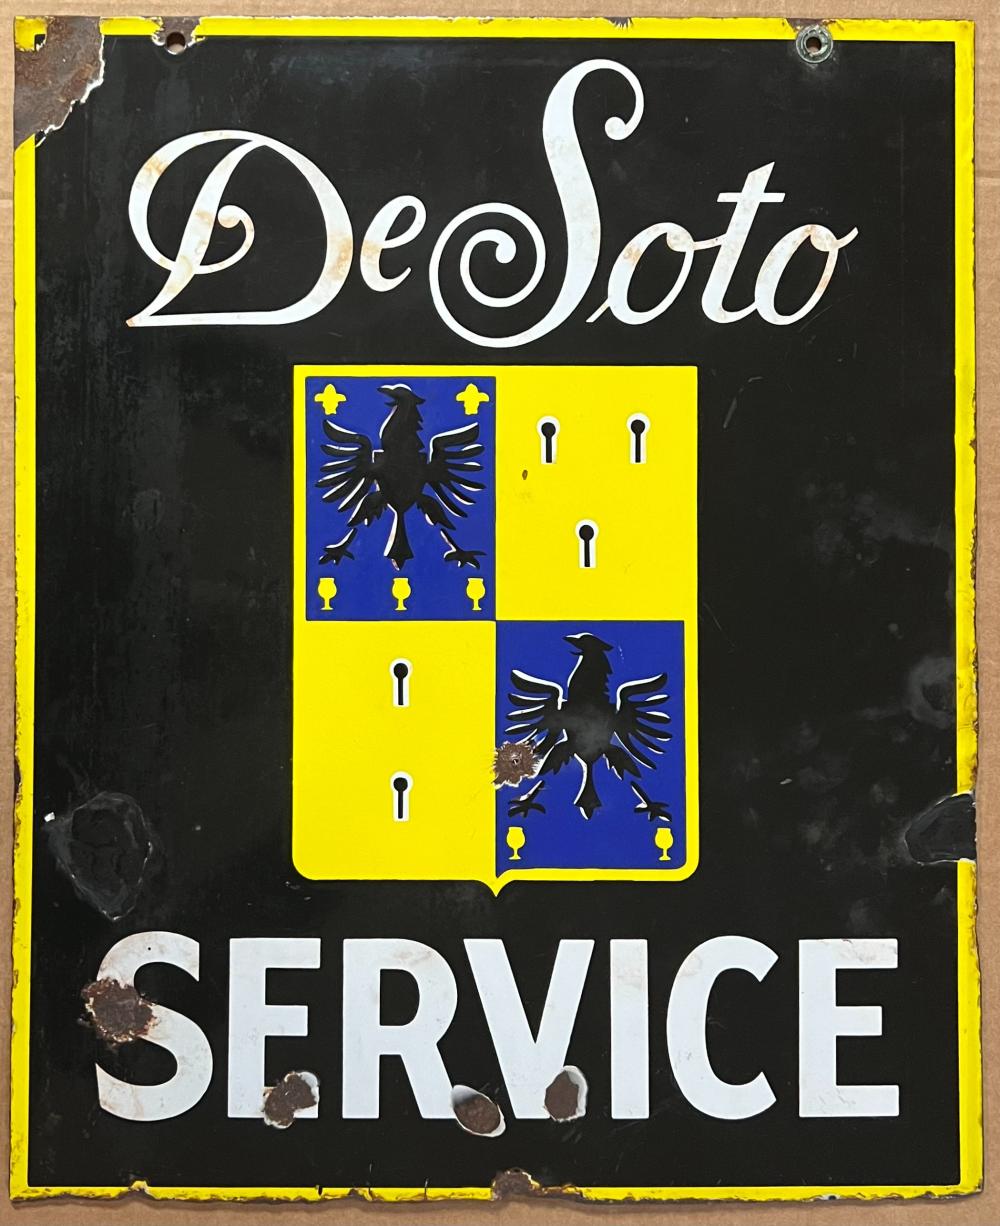 DESOTO SERVICE PORCELAIN DOUBLE 2e293b